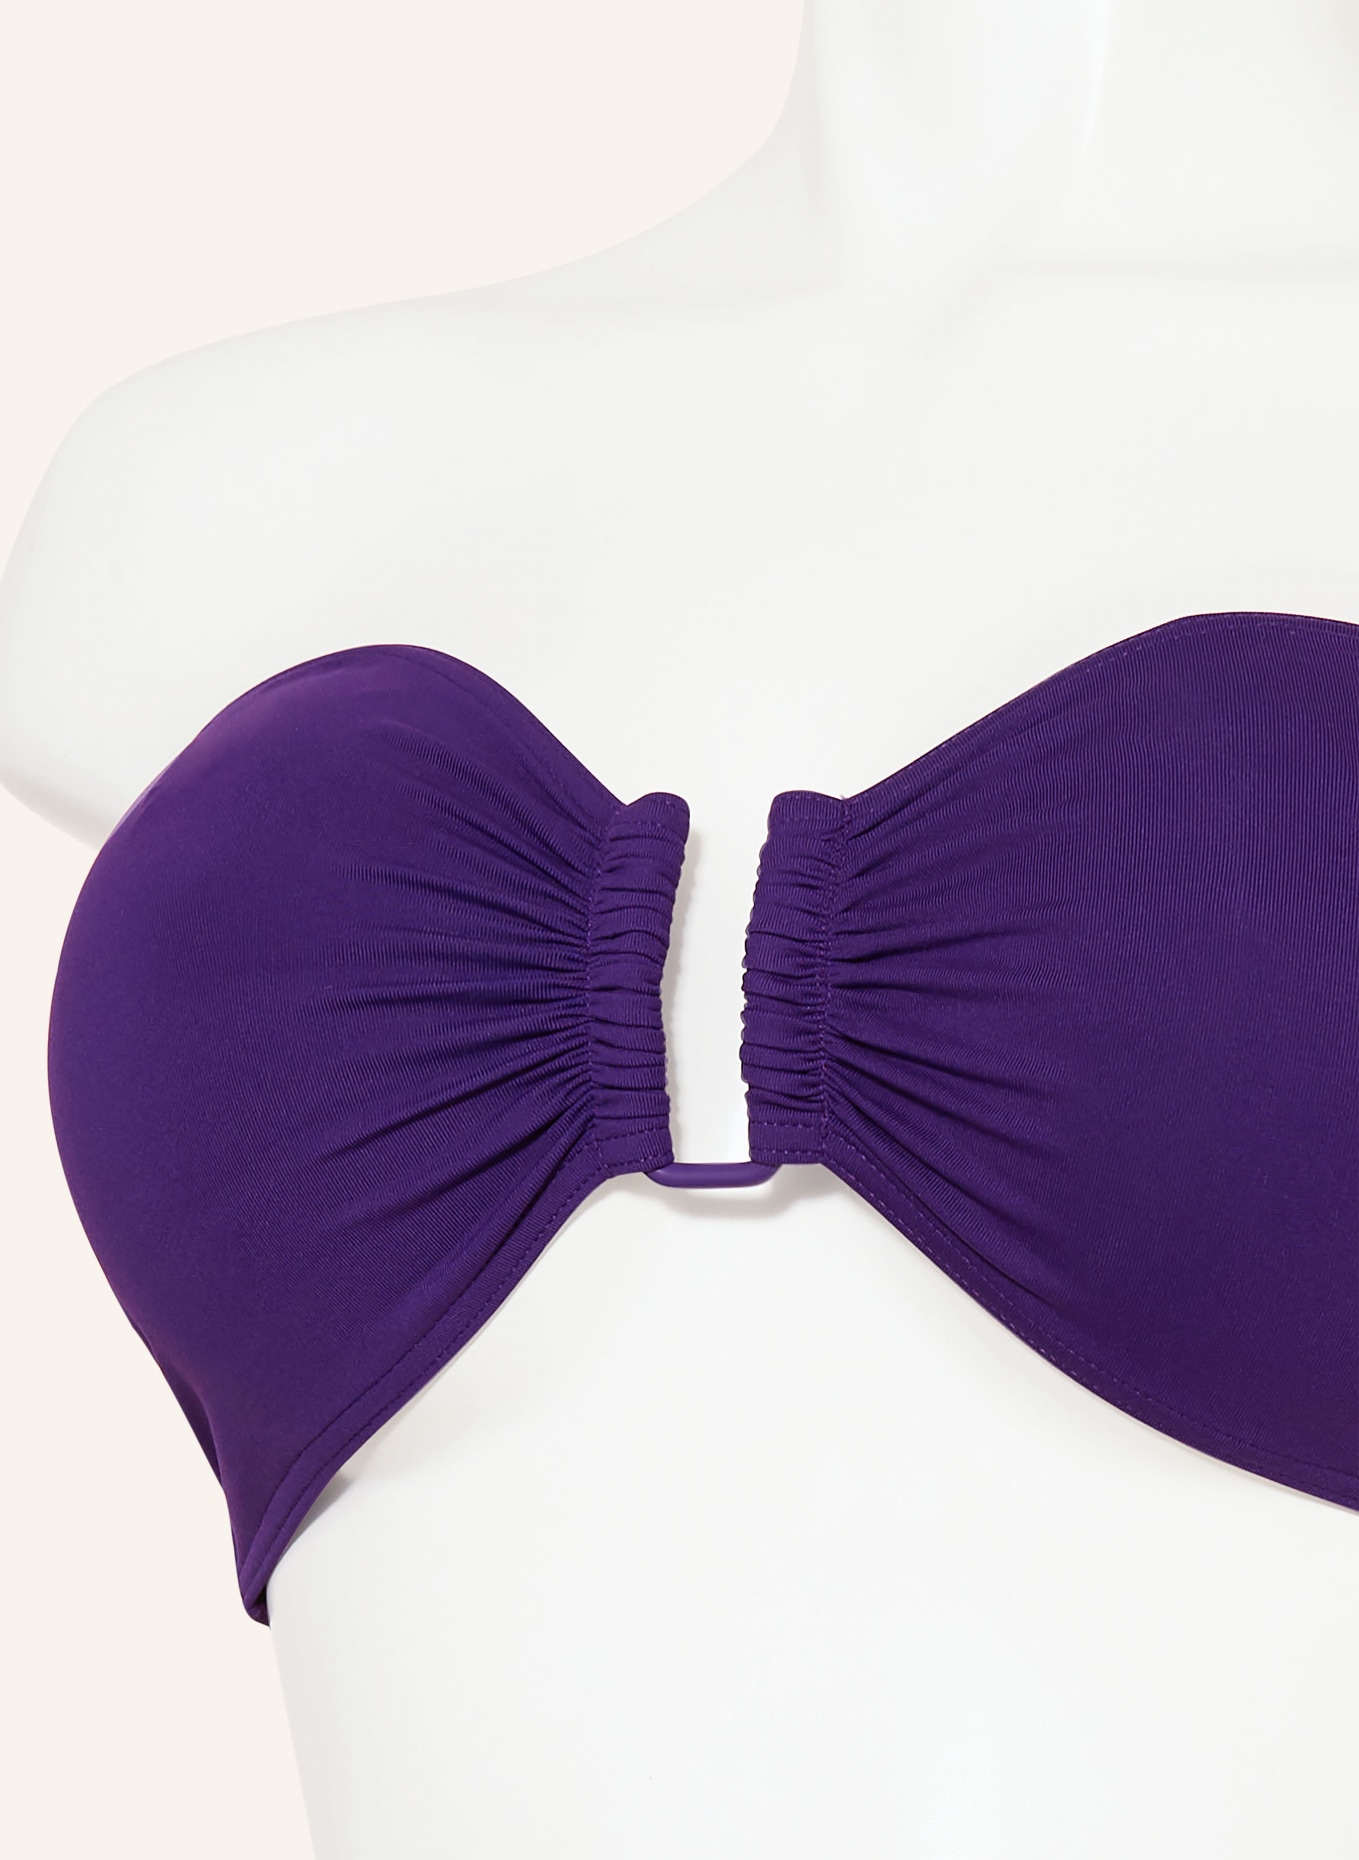 ERES Basic bikini bottoms FRIPON, Color: PURPLE (Image 4)